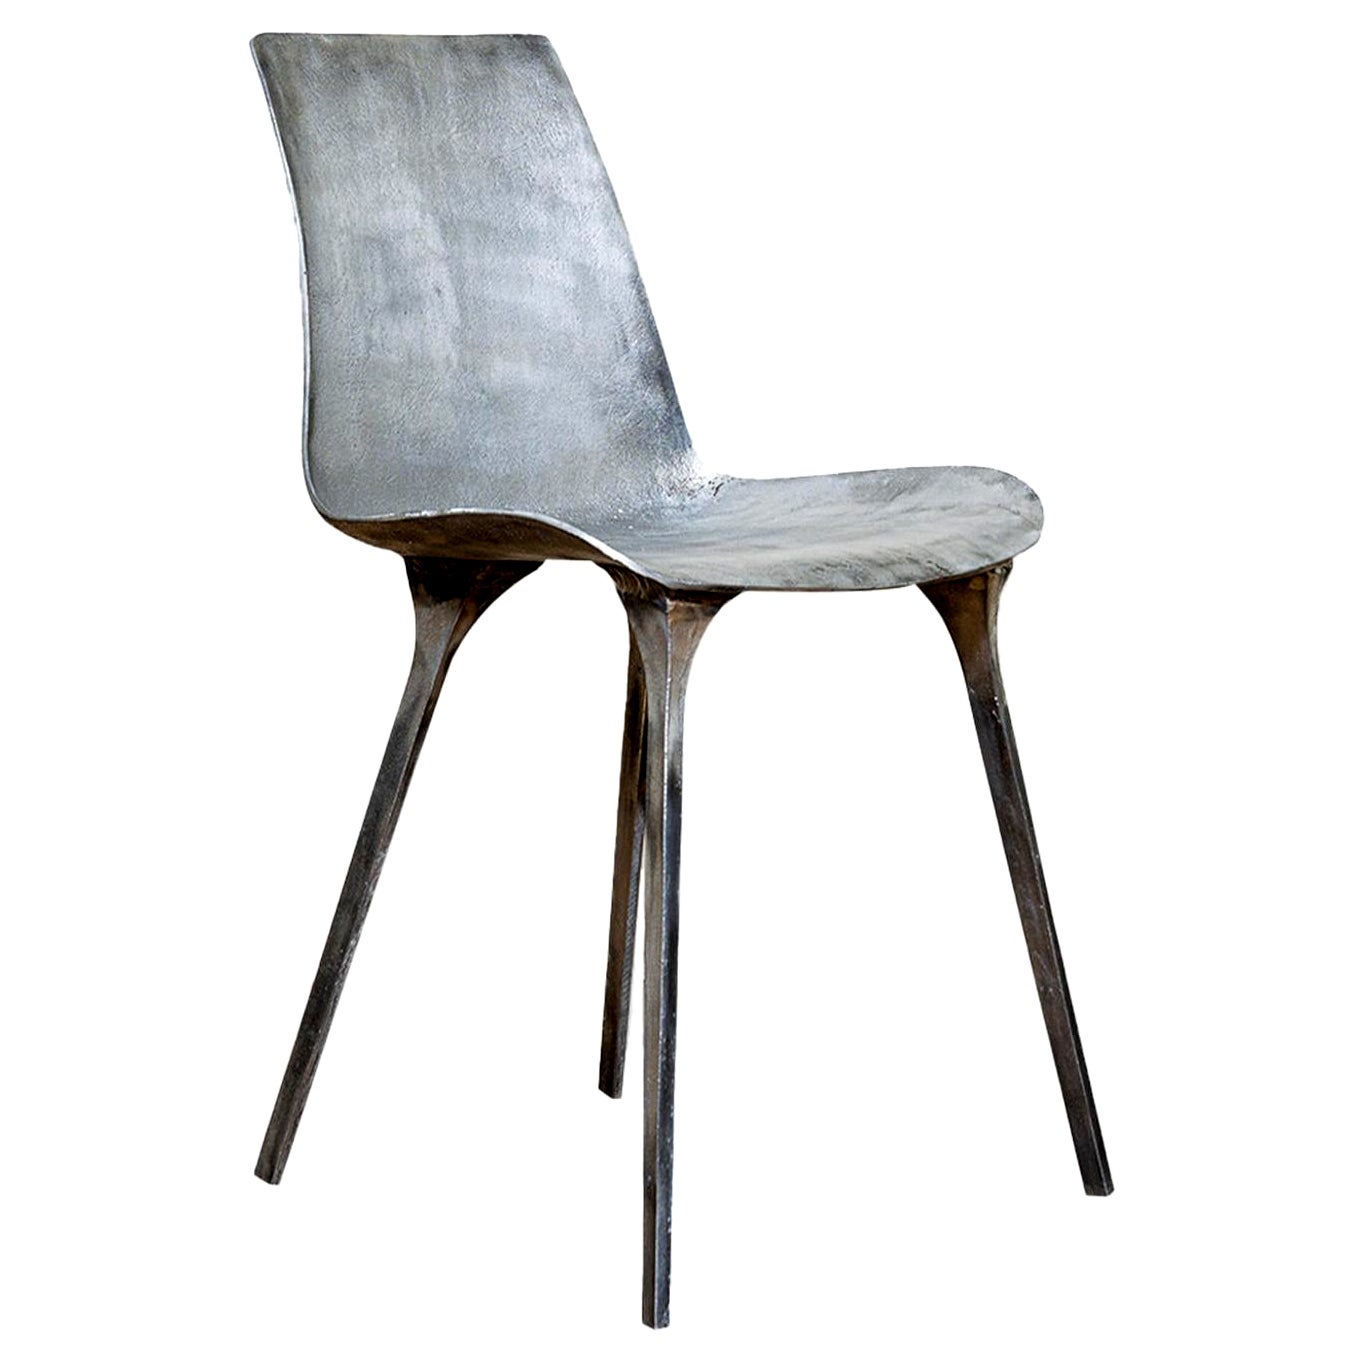 Sylvie-Stuhl aus Silber und Metall von Stefano Del Vecchio für Delvis Unlimited